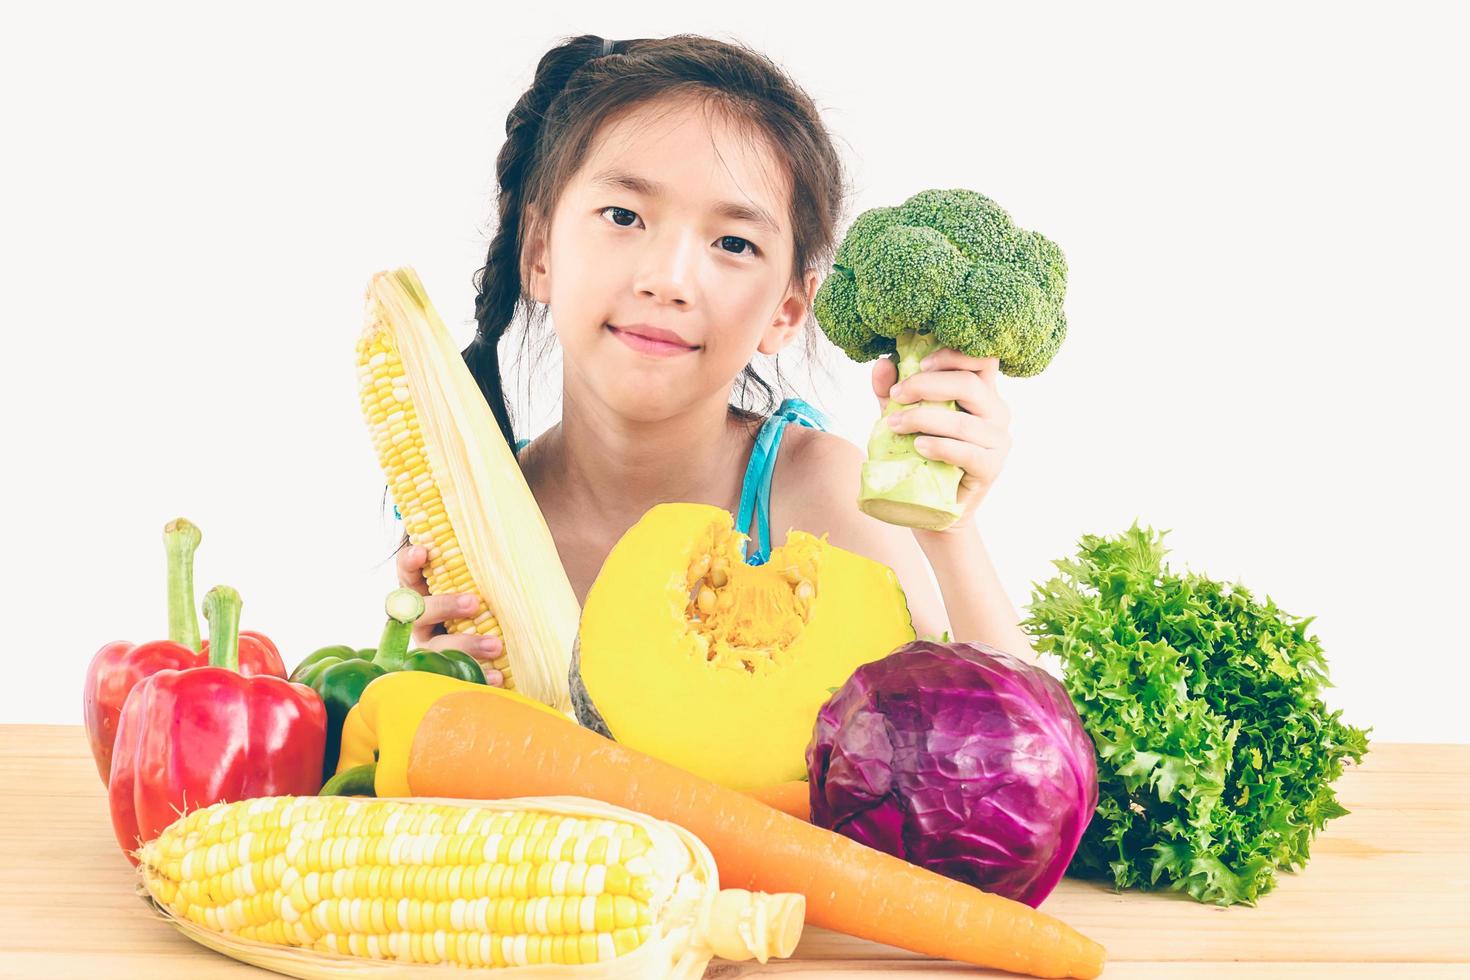 photo de style vintage d'une jolie fille asiatique montrant une expression de plaisir avec des légumes frais colorés isolés sur fond blanc